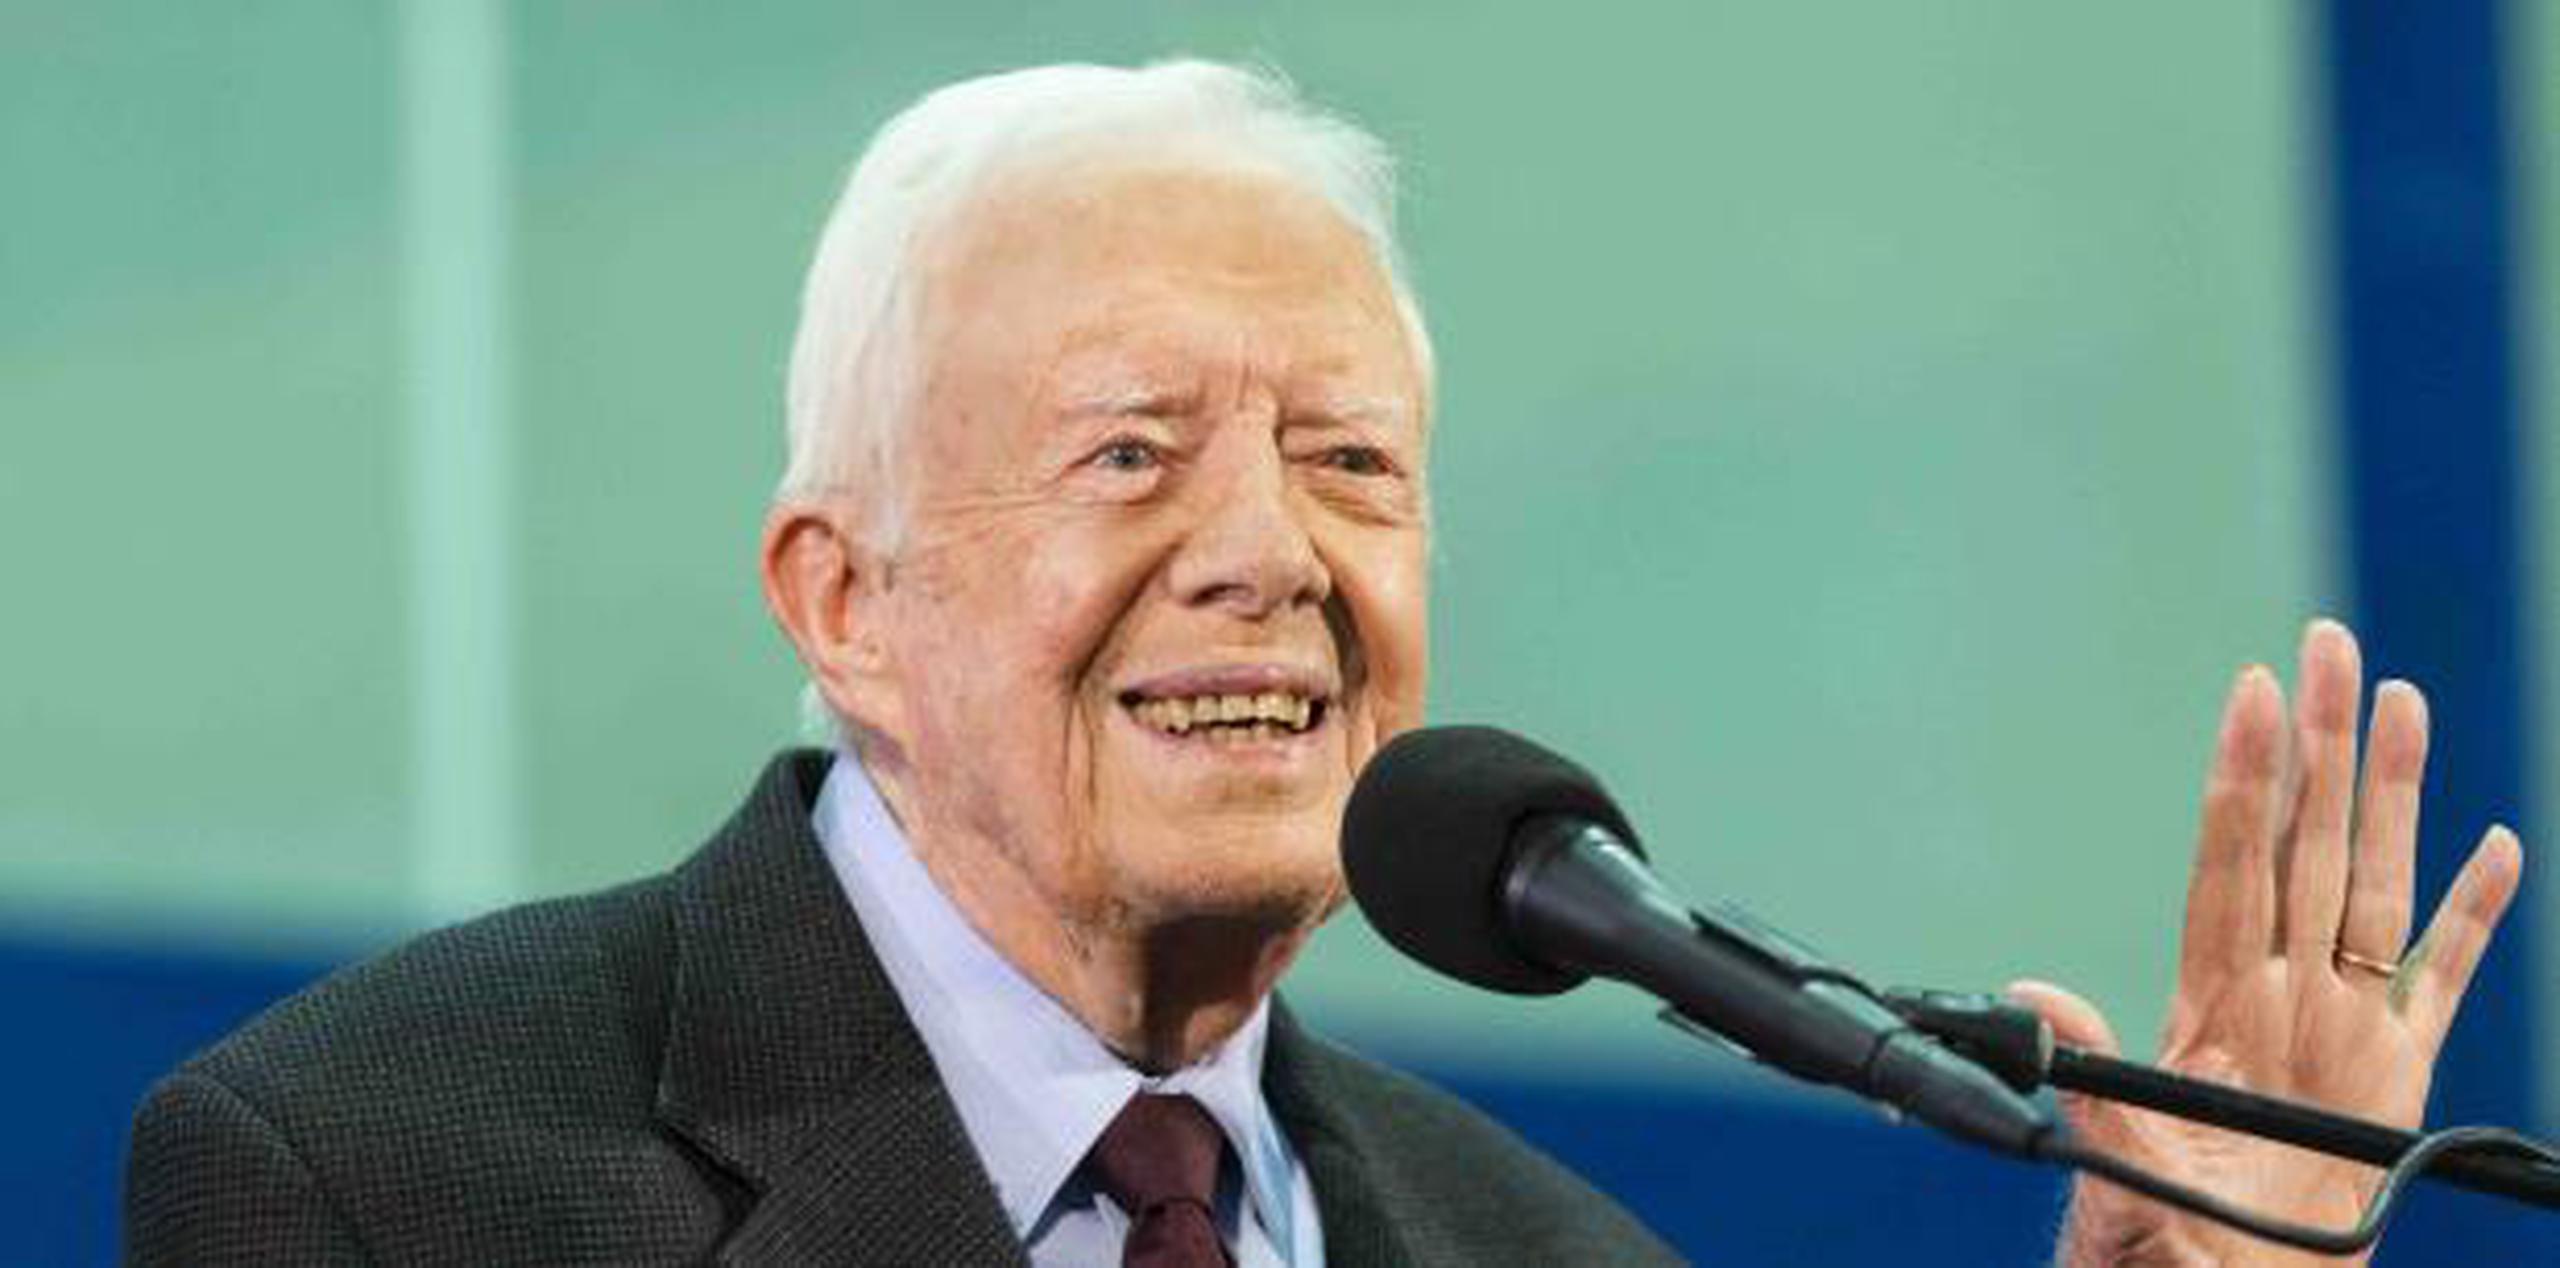 Jimmy Carter sobrevivió a un diagnóstico grave de cáncer en 2015. (AP / John Amis)